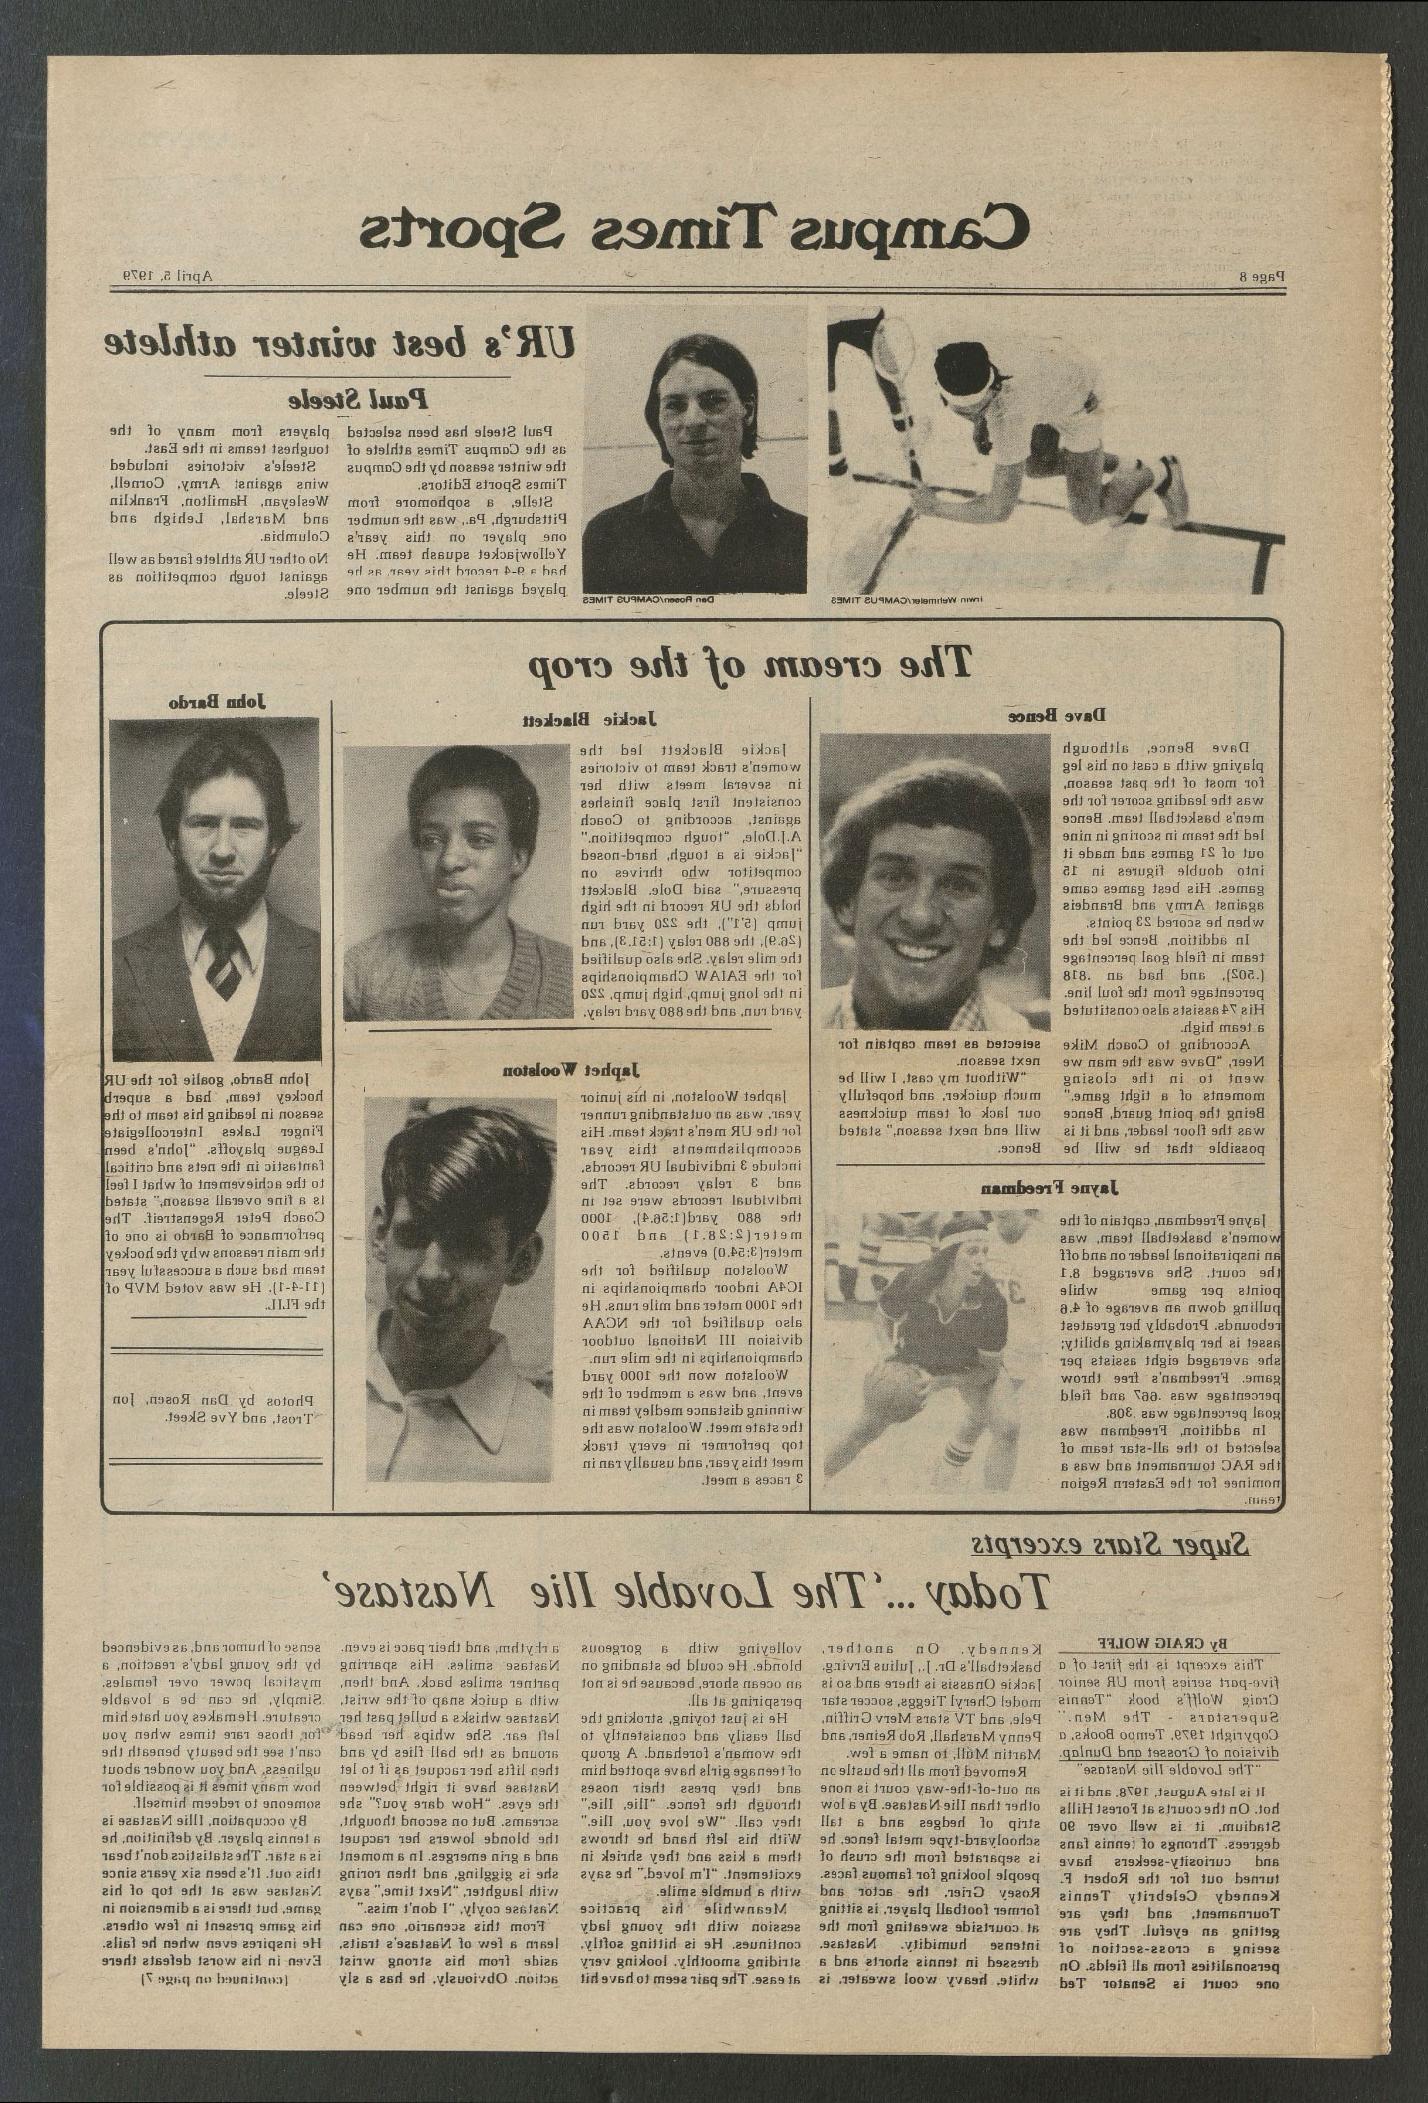 1979年4月5日，《校园时报》刊登了一篇关于杰基·布莱克特的文章.